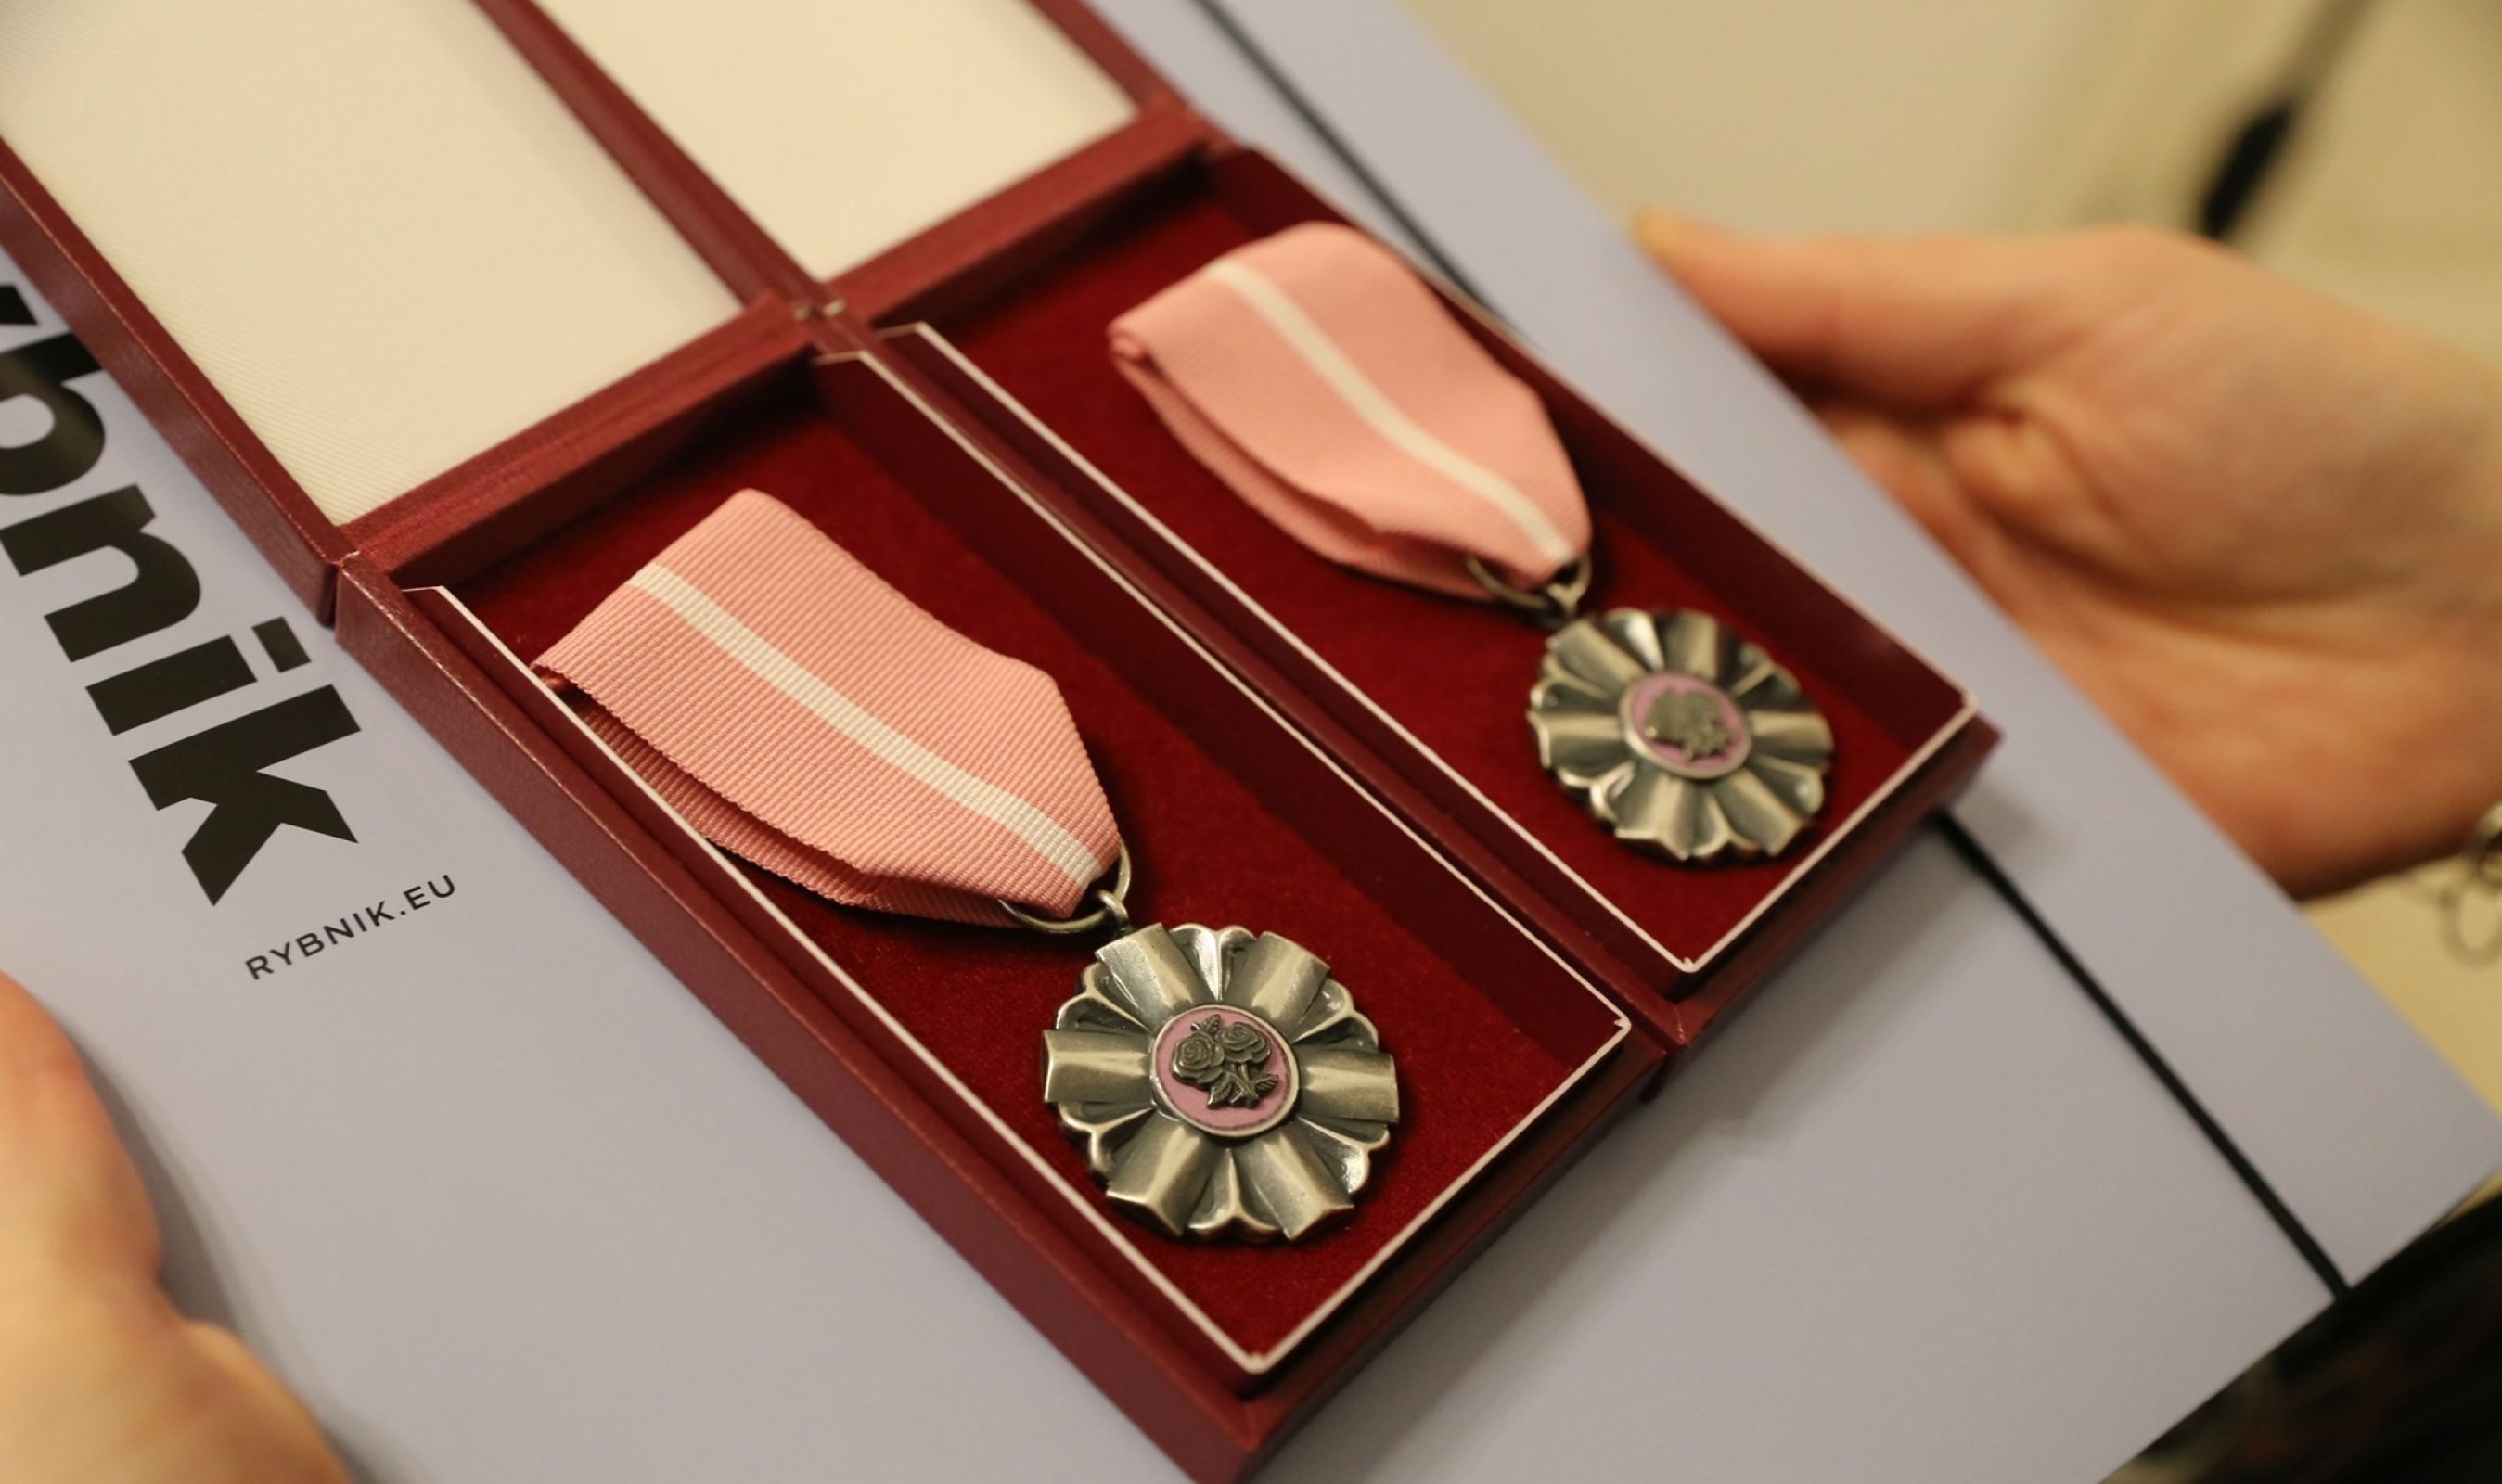 Medale wręczane parom świętującym Złote Gody, czyli 50-lecie małżeństwa. Zdj. Wacław Troszka